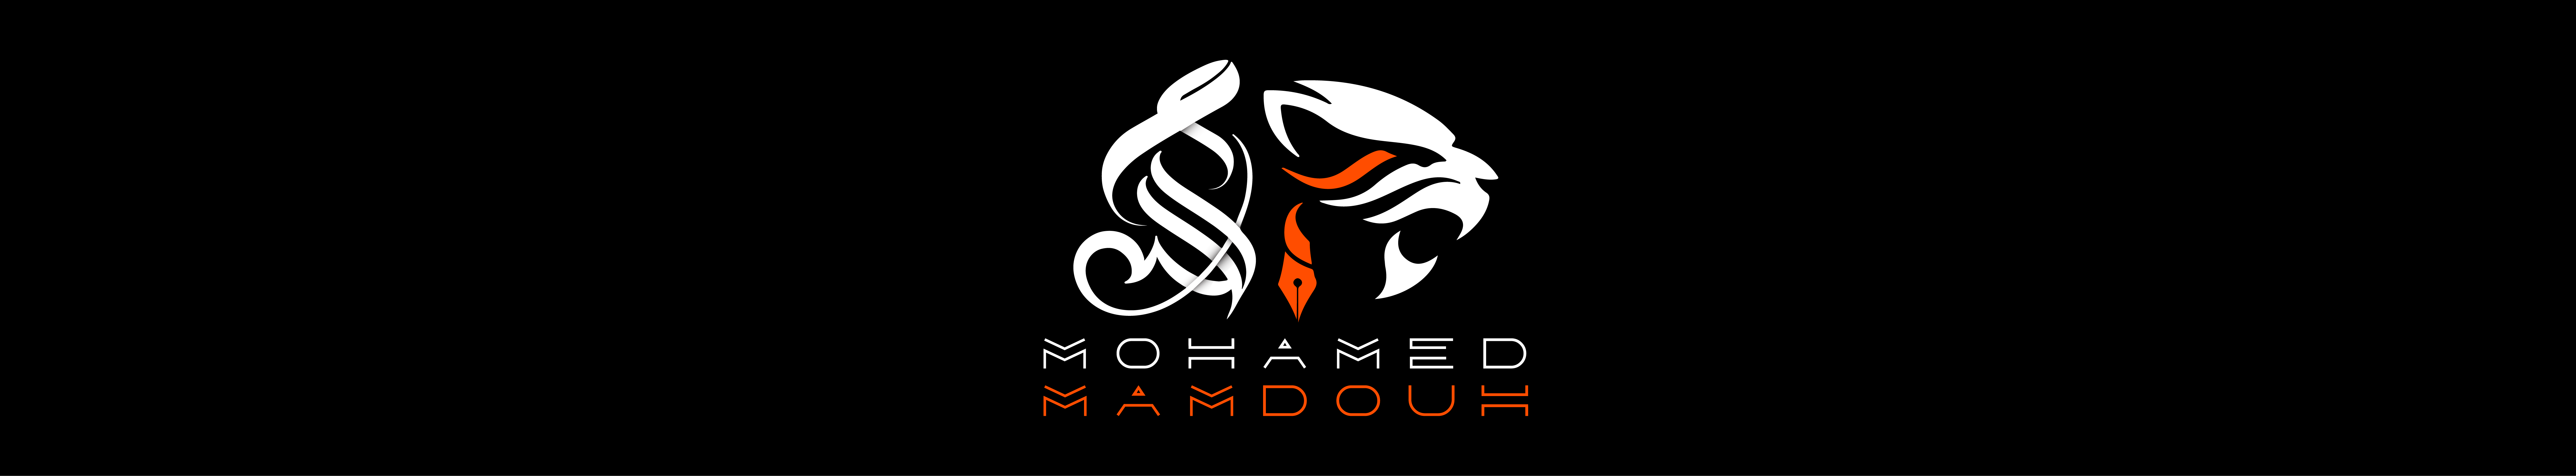 Mohamed Mamdouh's profile banner